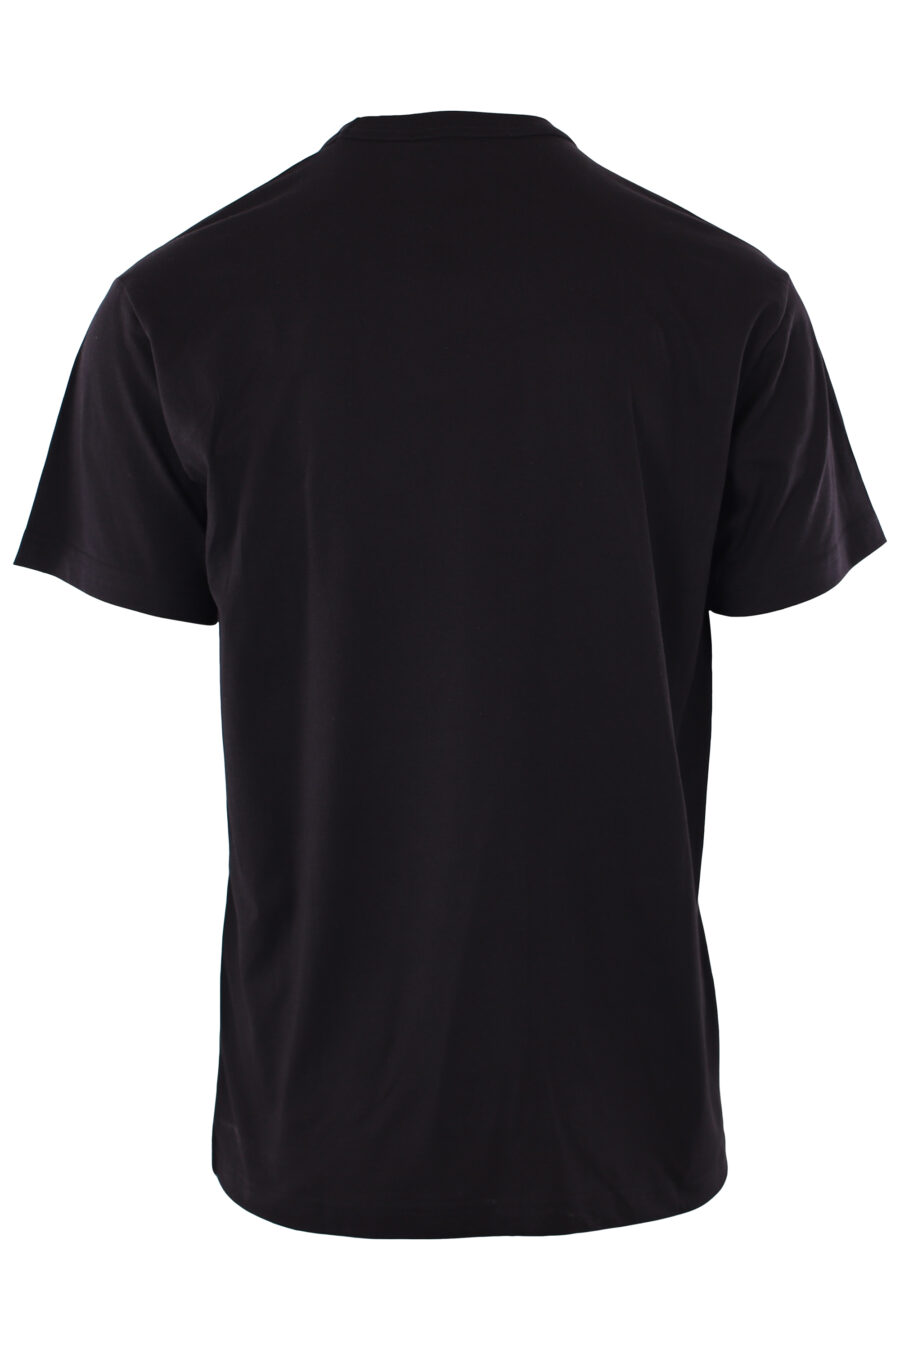 Camiseta negra con logo blanco en diagonal - IMG 6567